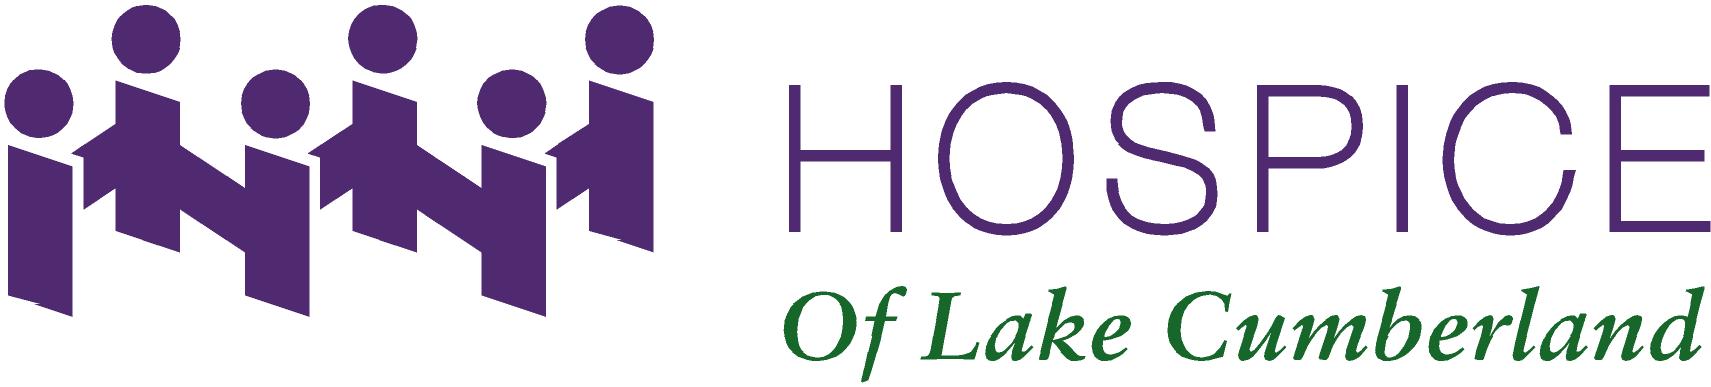 Hospice of Lake Cumberland logo